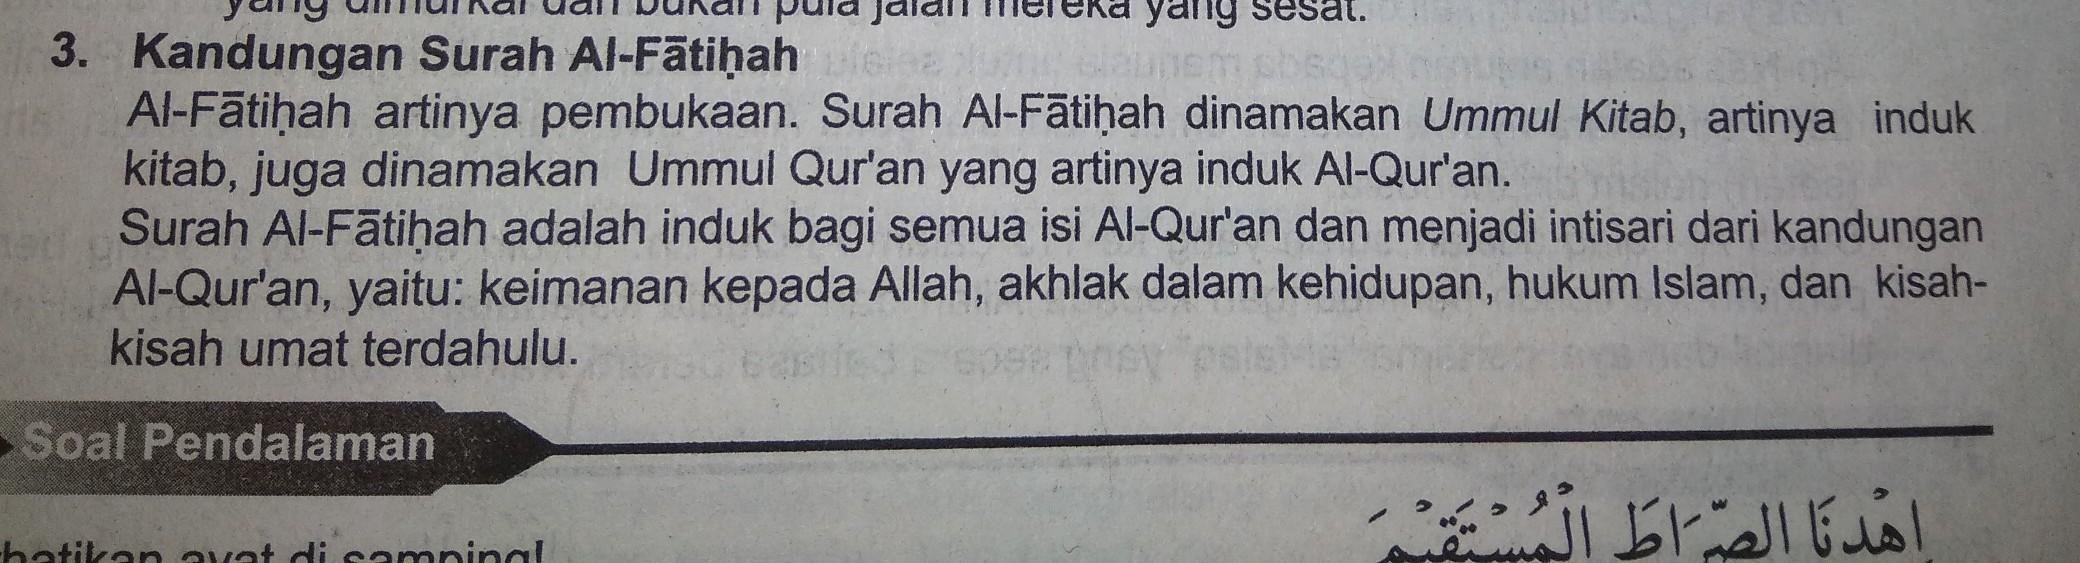 Detail Pesan Dari Surat Al Fatihah Nomer 3